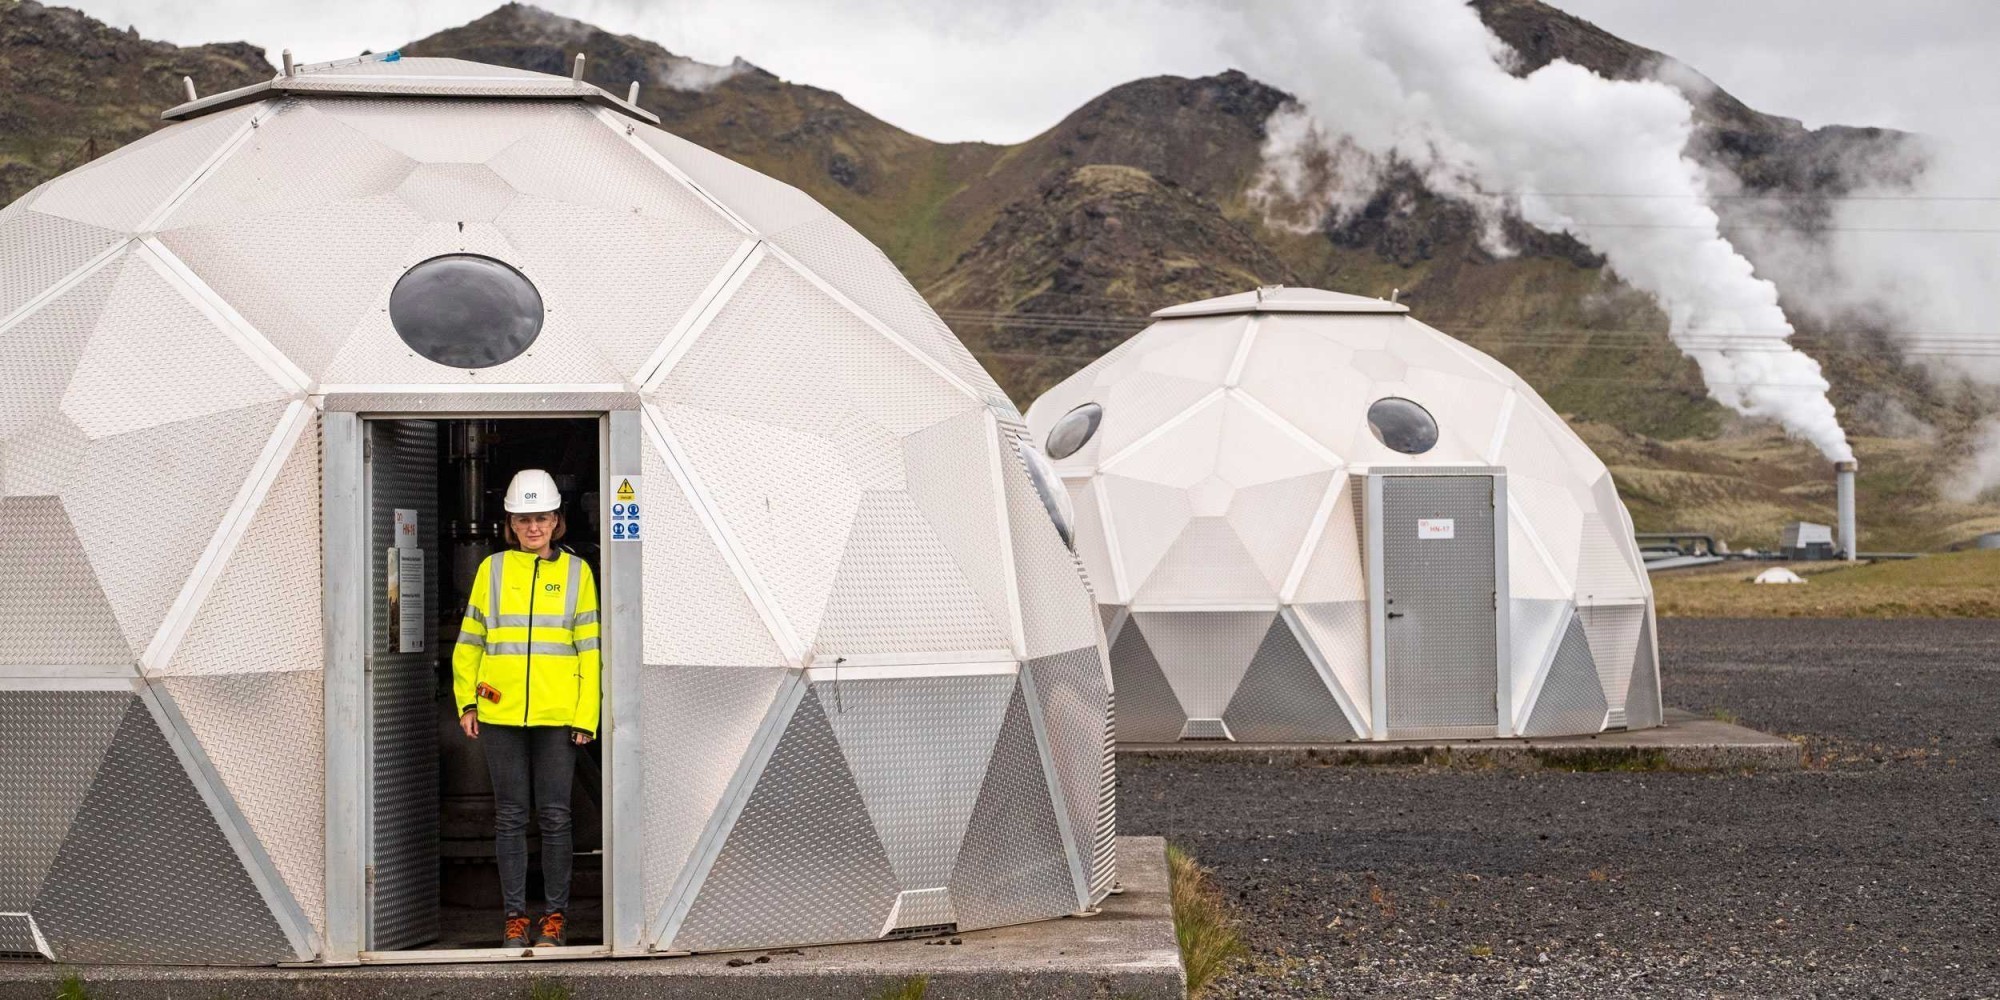 Le dioxyde de carbone capté et liquéfié en Suisse est injecté dans le sous-sol par la centrale géothermique de Hellisheiði, en Islande, afin d'être minéralisé de manière permanente dans les puits existants.